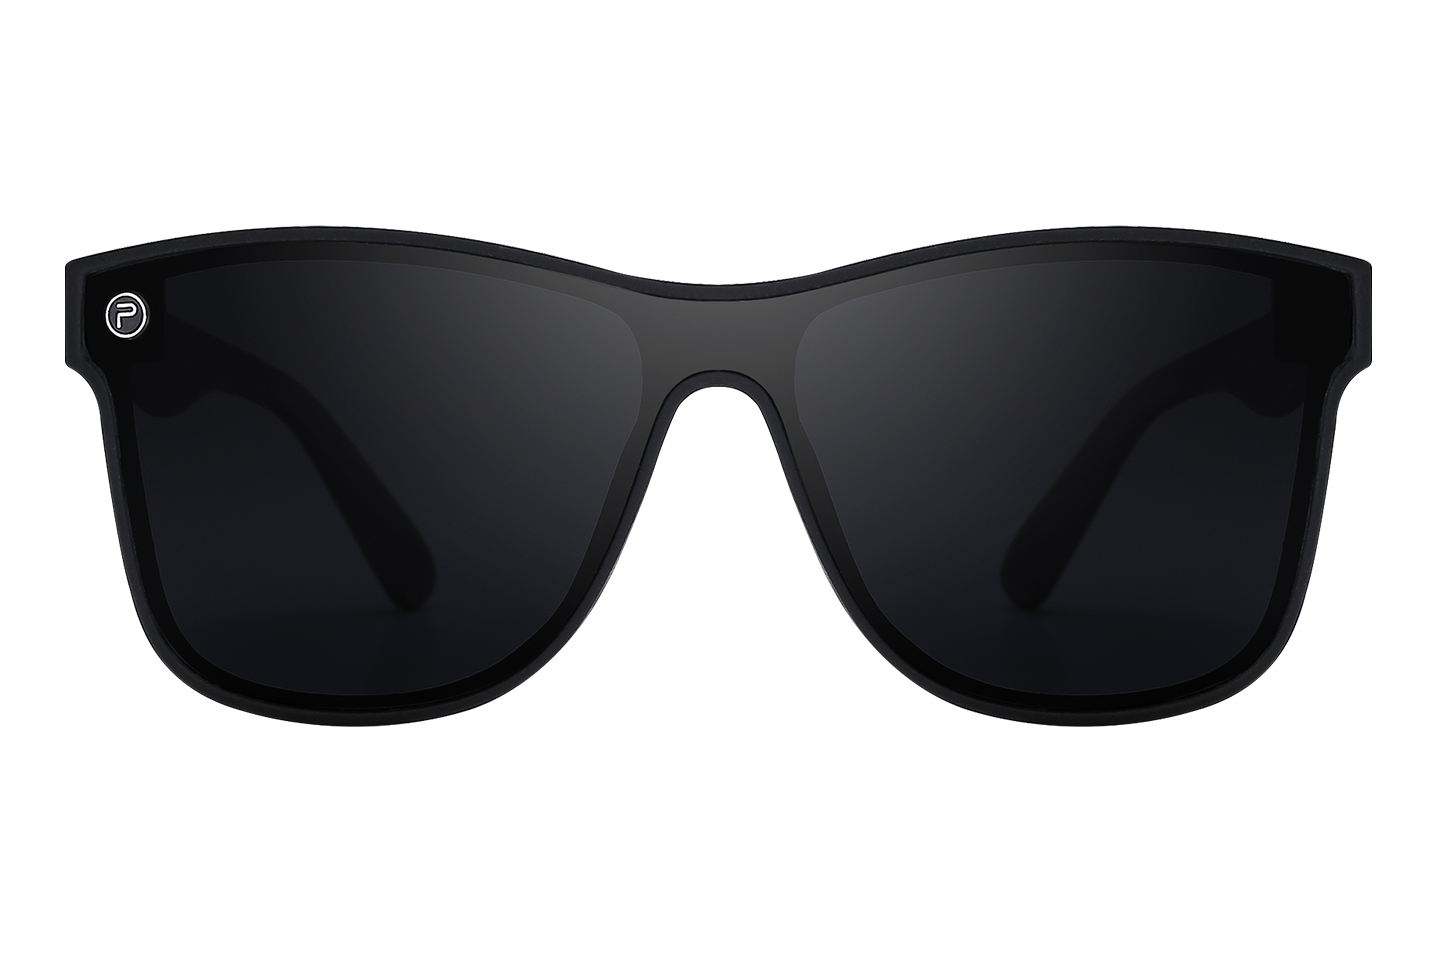 NEW Quay “Jezabell” Sunglasses in black fade | Sunglasses, Fade to black,  Mirrored sunglasses